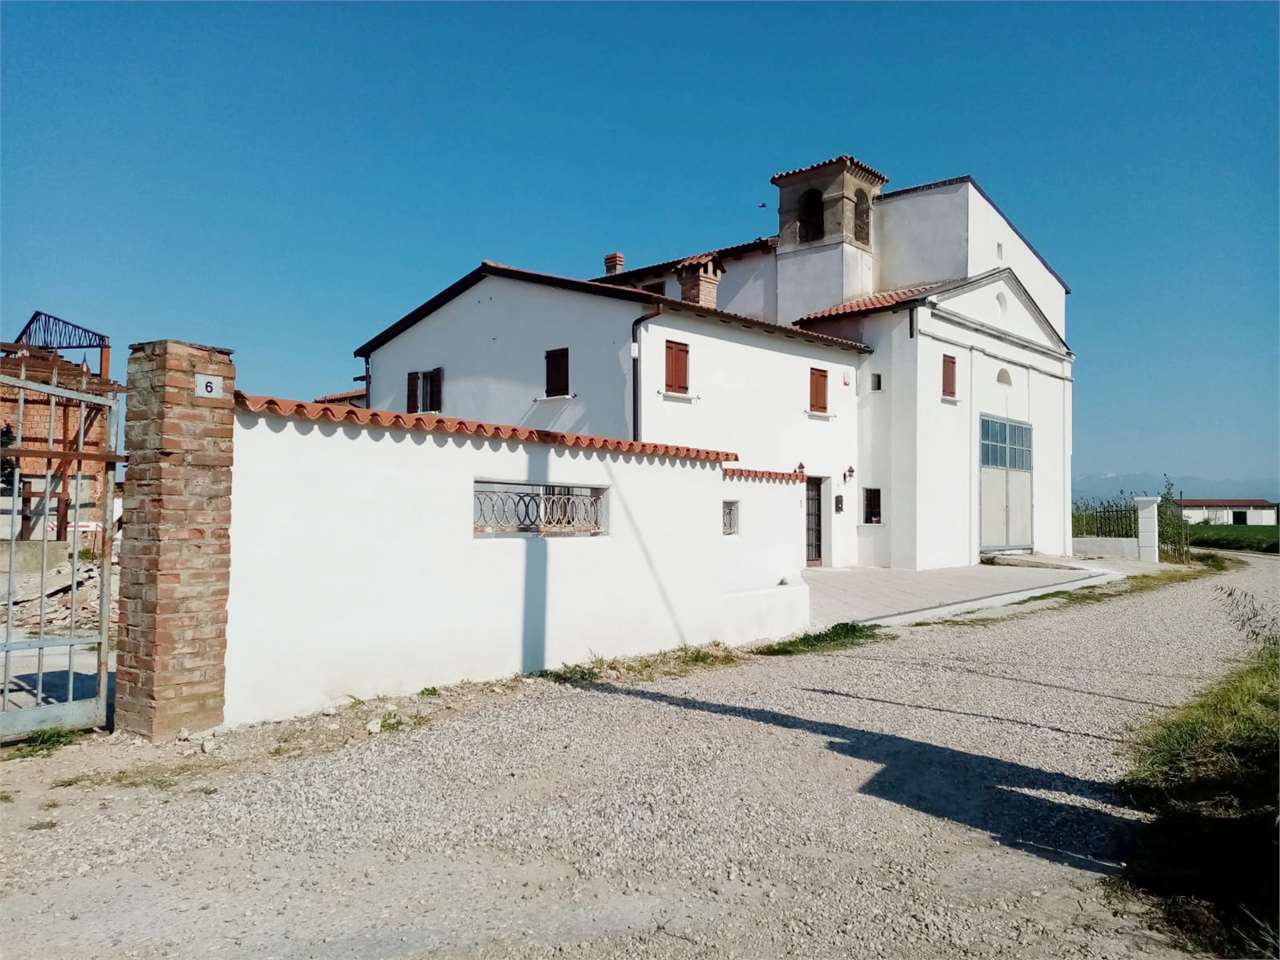 Rustico / Casale in vendita a Zevio, 8 locali, prezzo € 400.000 | PortaleAgenzieImmobiliari.it